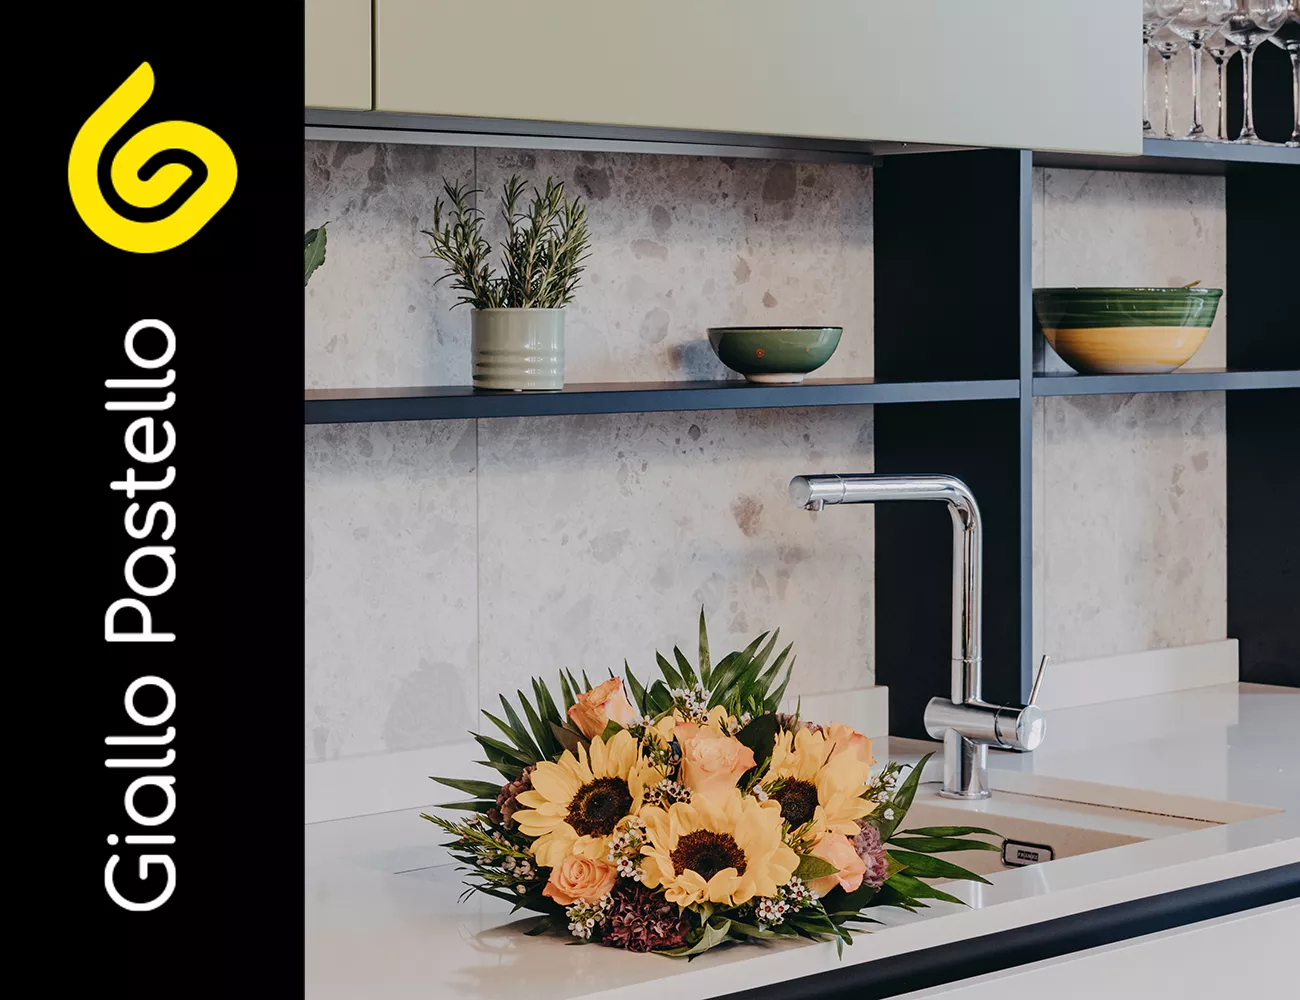 Dettaglio rinnovo appartamento: lavandino cucina - Rinnovo Appartamento - Giallo Pastello Interior Design Brescia